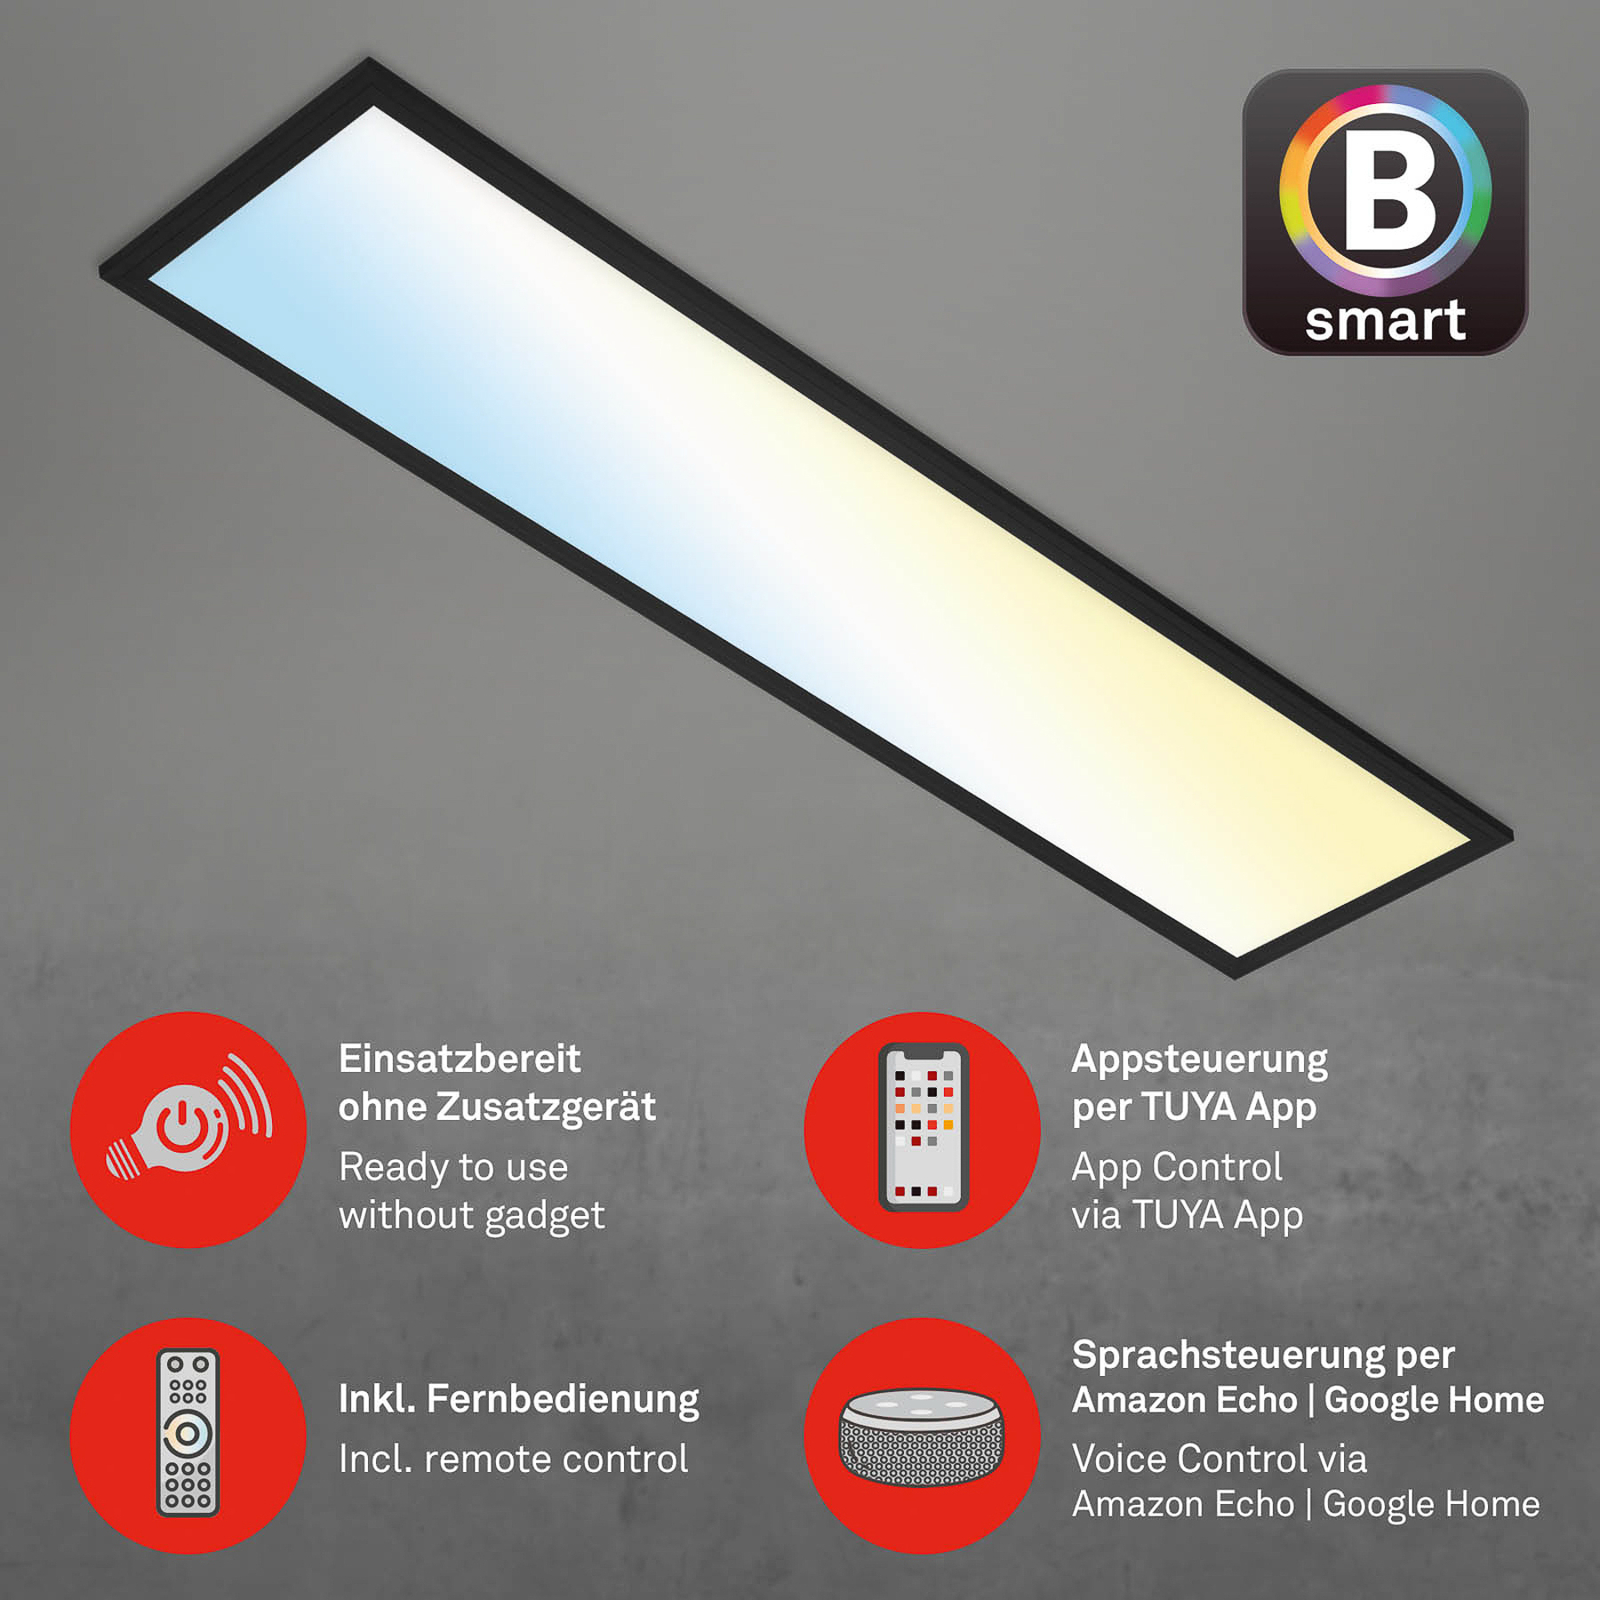 LED svetlo Piatto S WiFi Bluetooth CCT diaľkové